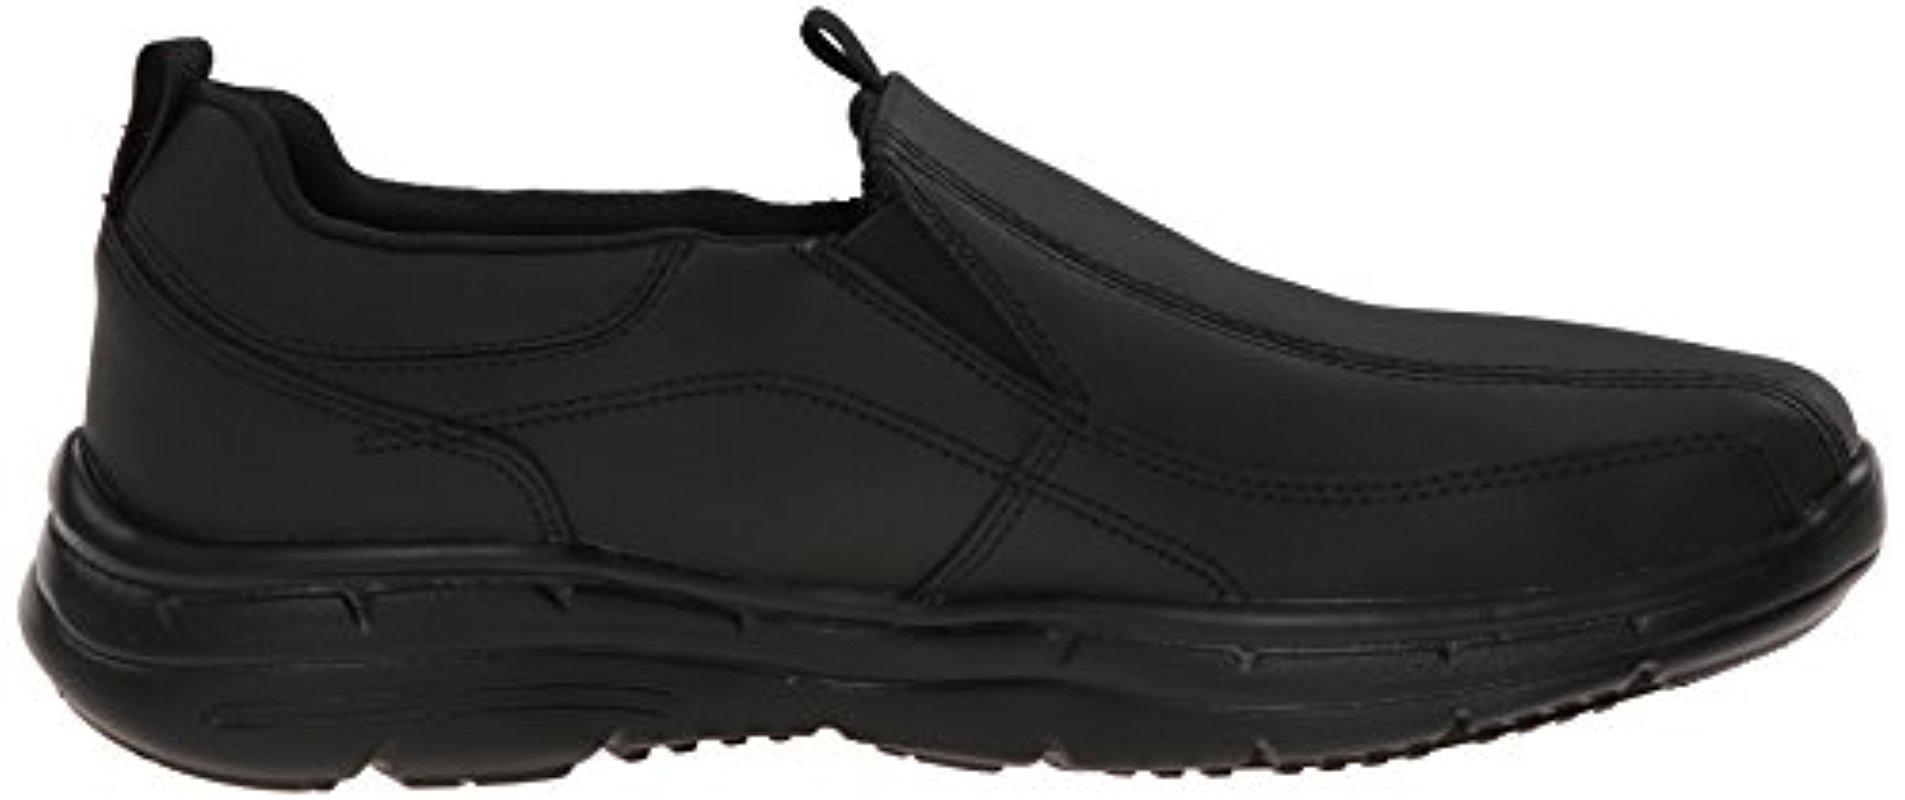 Skechers Leather Glides Docklands Slip-on Loafer in Black for Men - Lyst